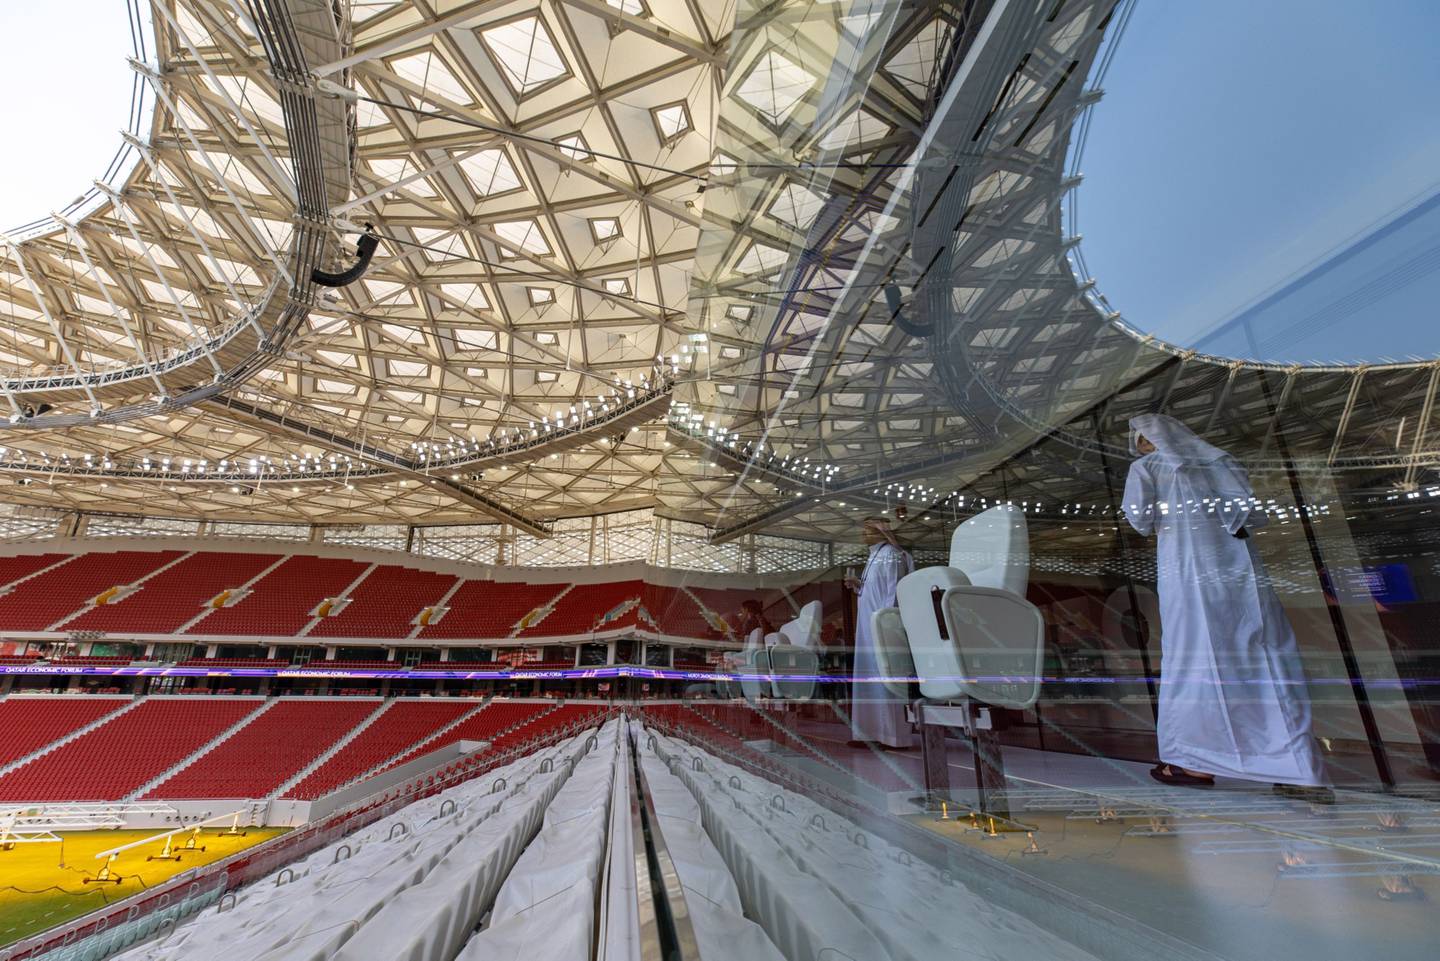 Visitantes dentro de un palco ejecutivo durante una visita al estadio de fútbol Al Thumama en Doha, Qatar.